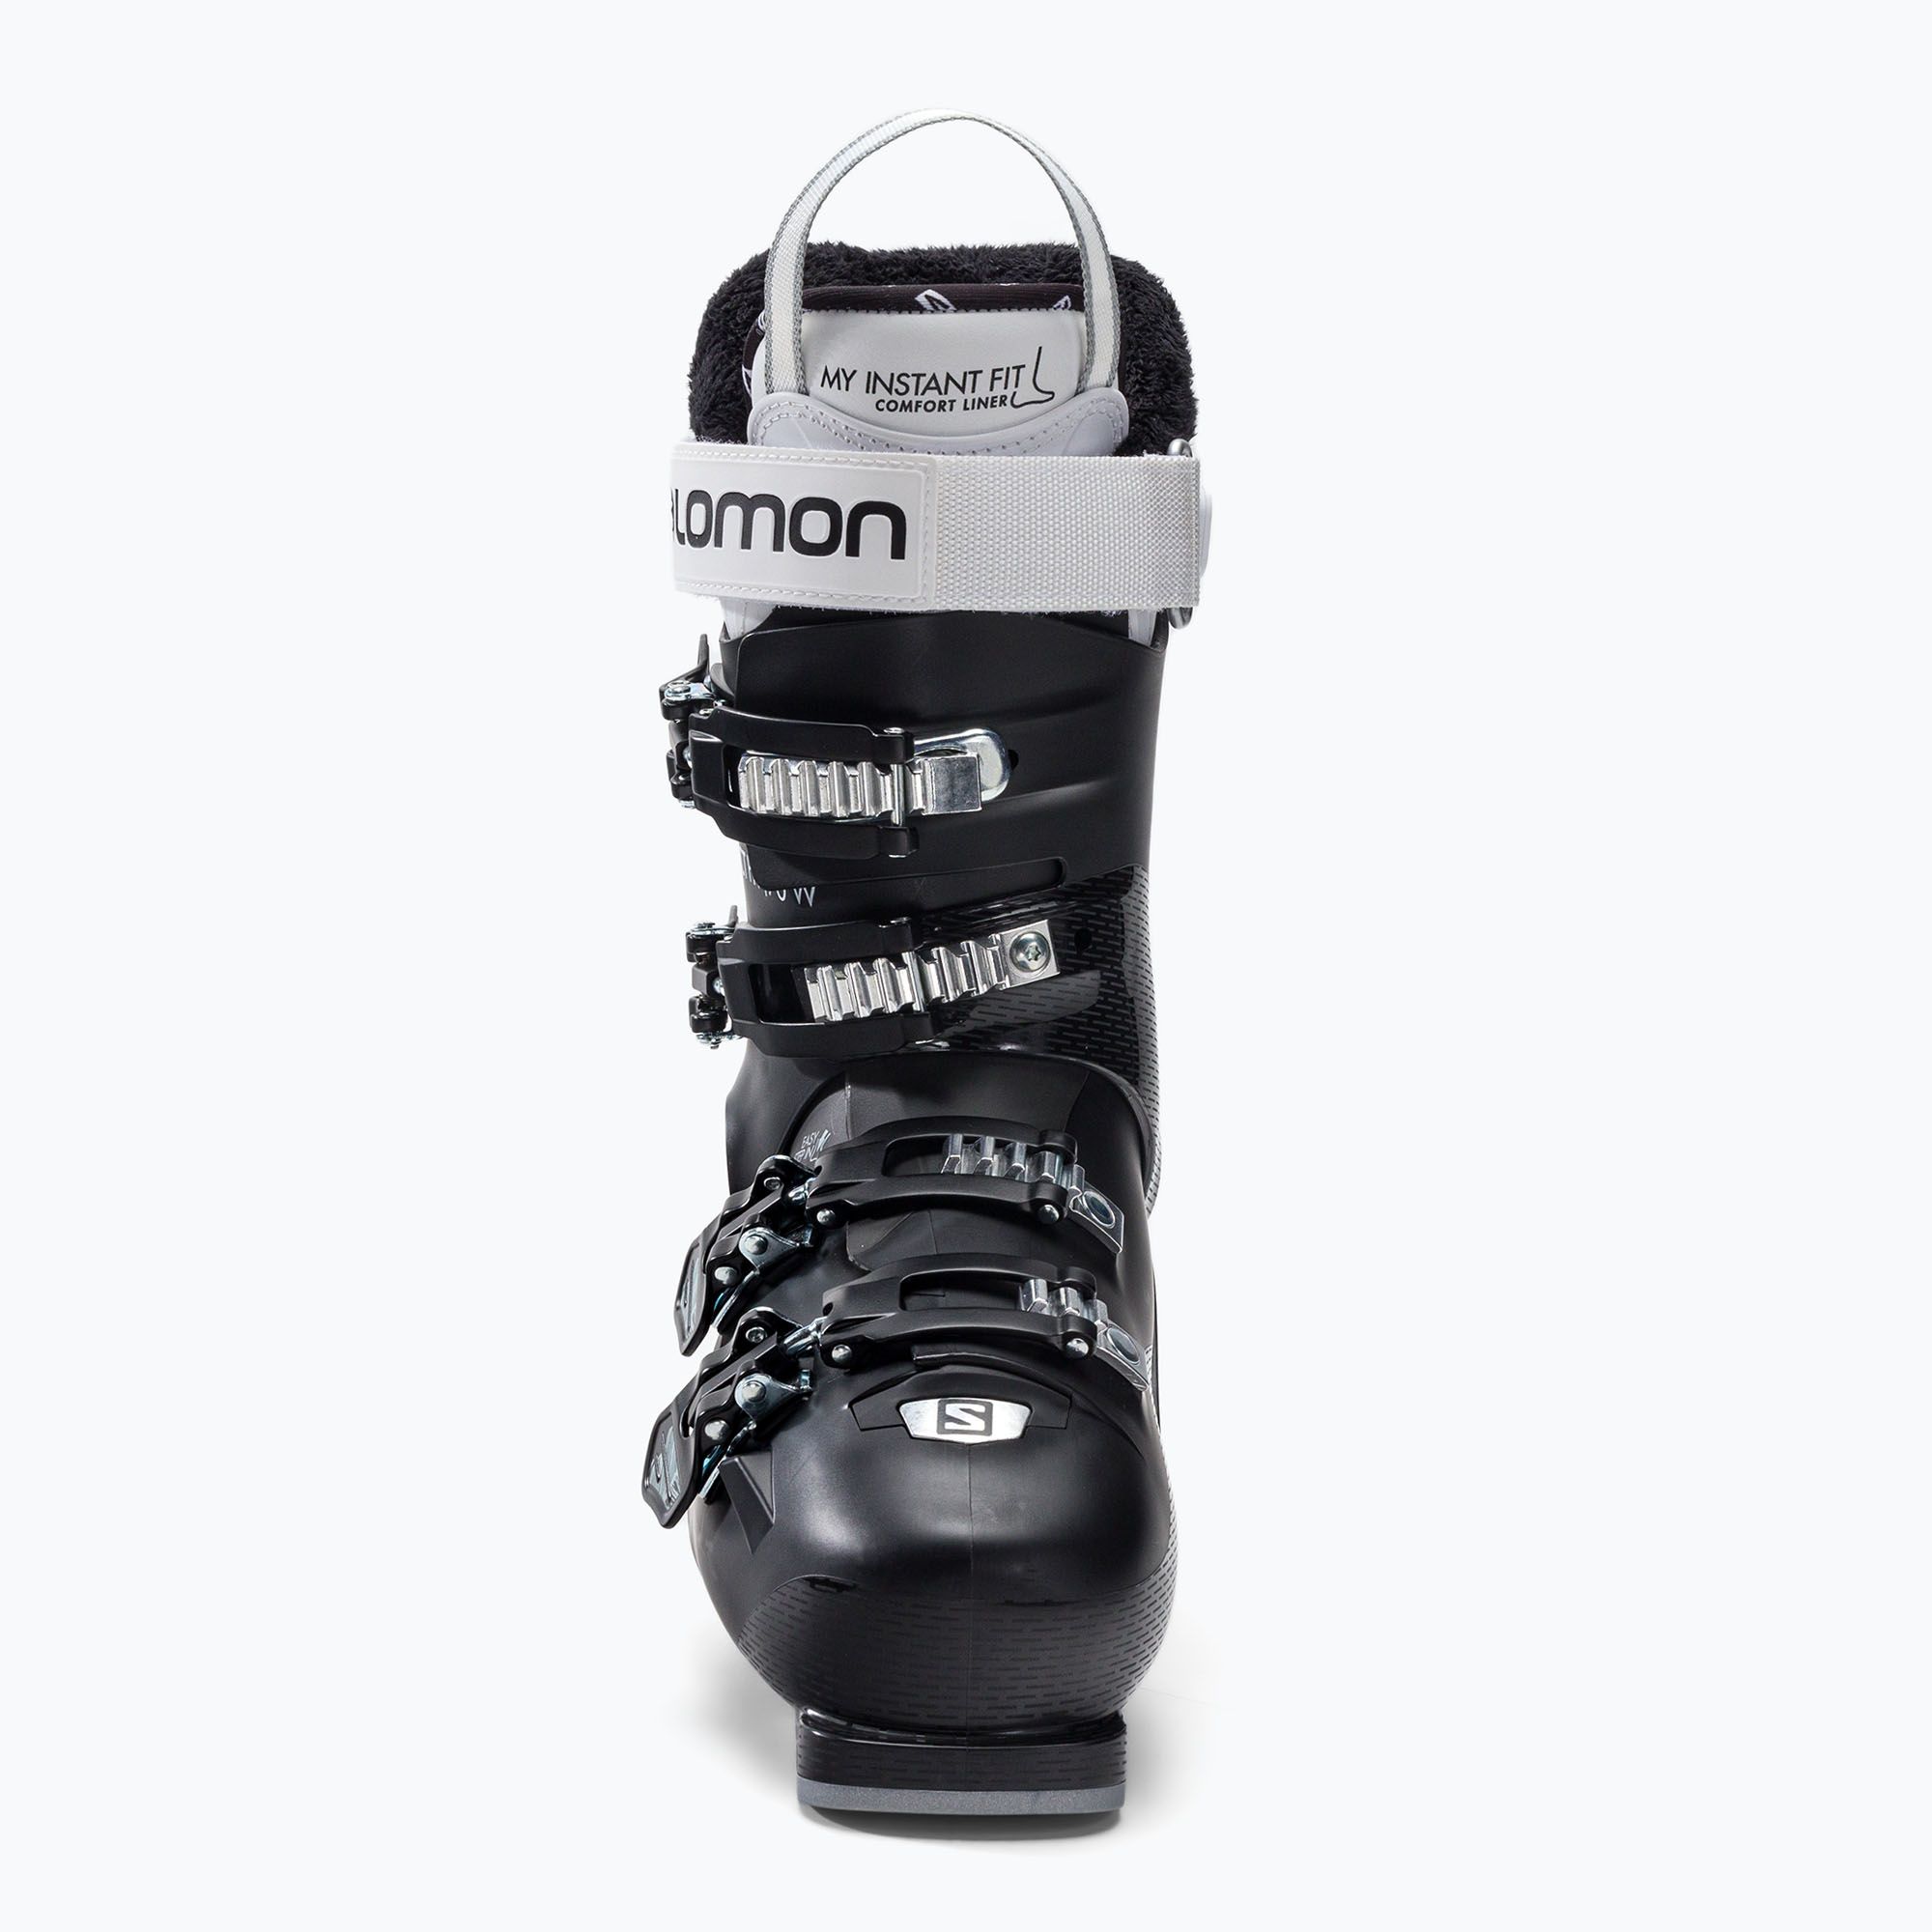 Buty narciarskie damskie Salomon Select Hv 70 W czarne L41500700 zdjęcie nr 2